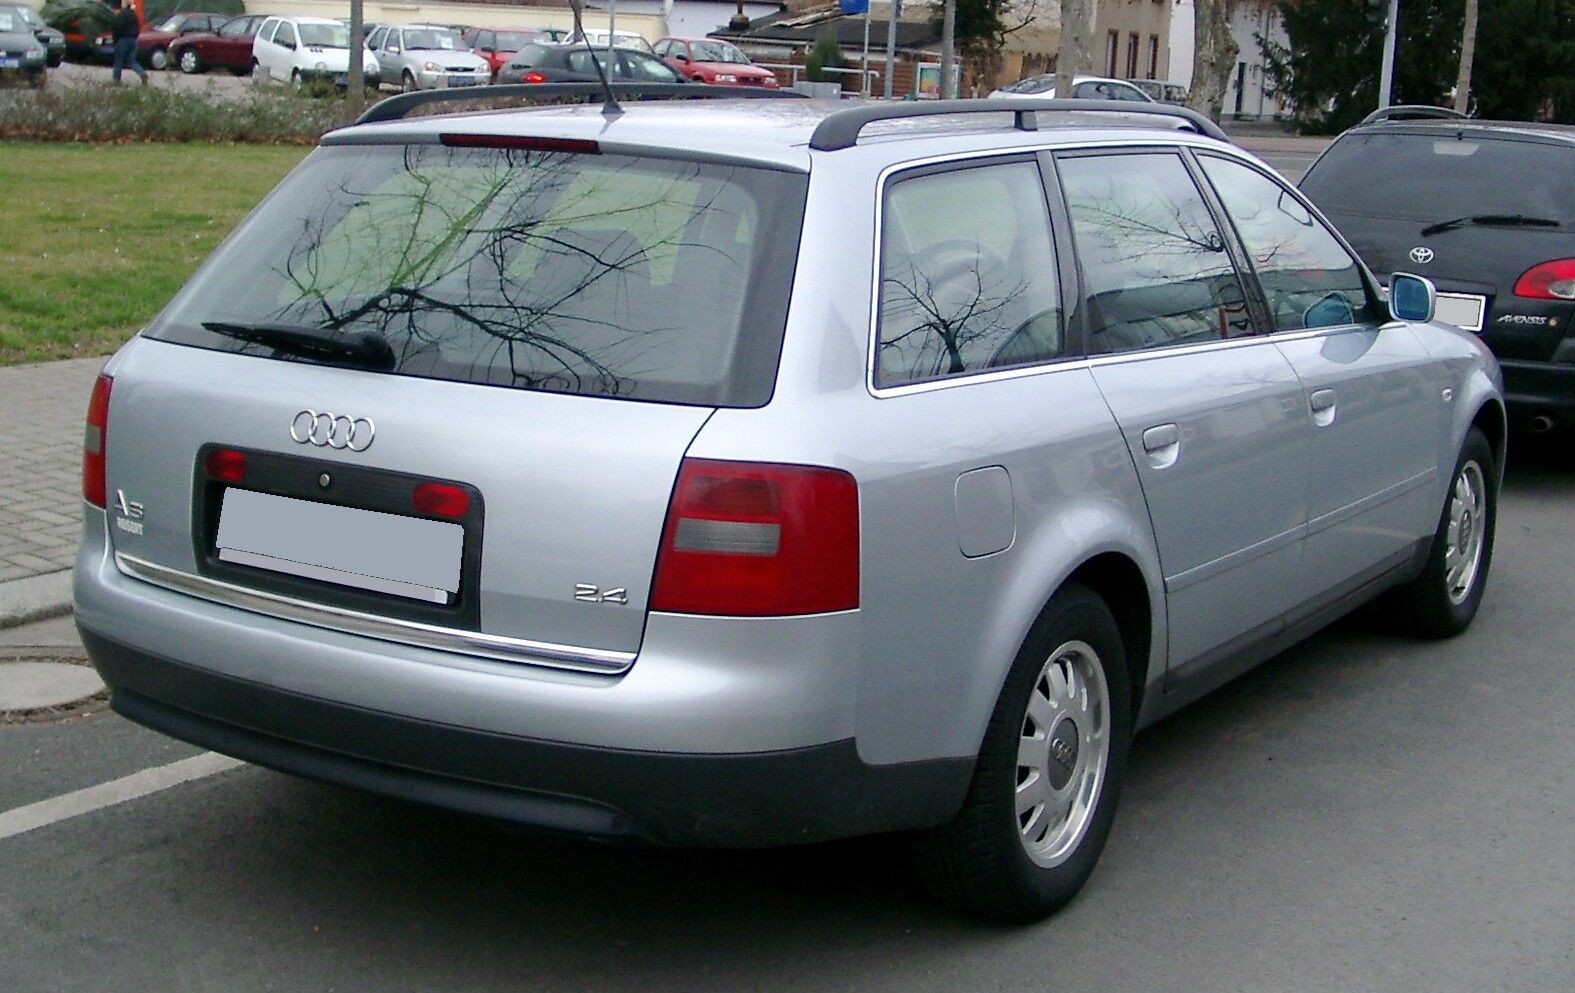 1998 Audi A6 C5 [2.5 V6 TDI 150HP], 0-100